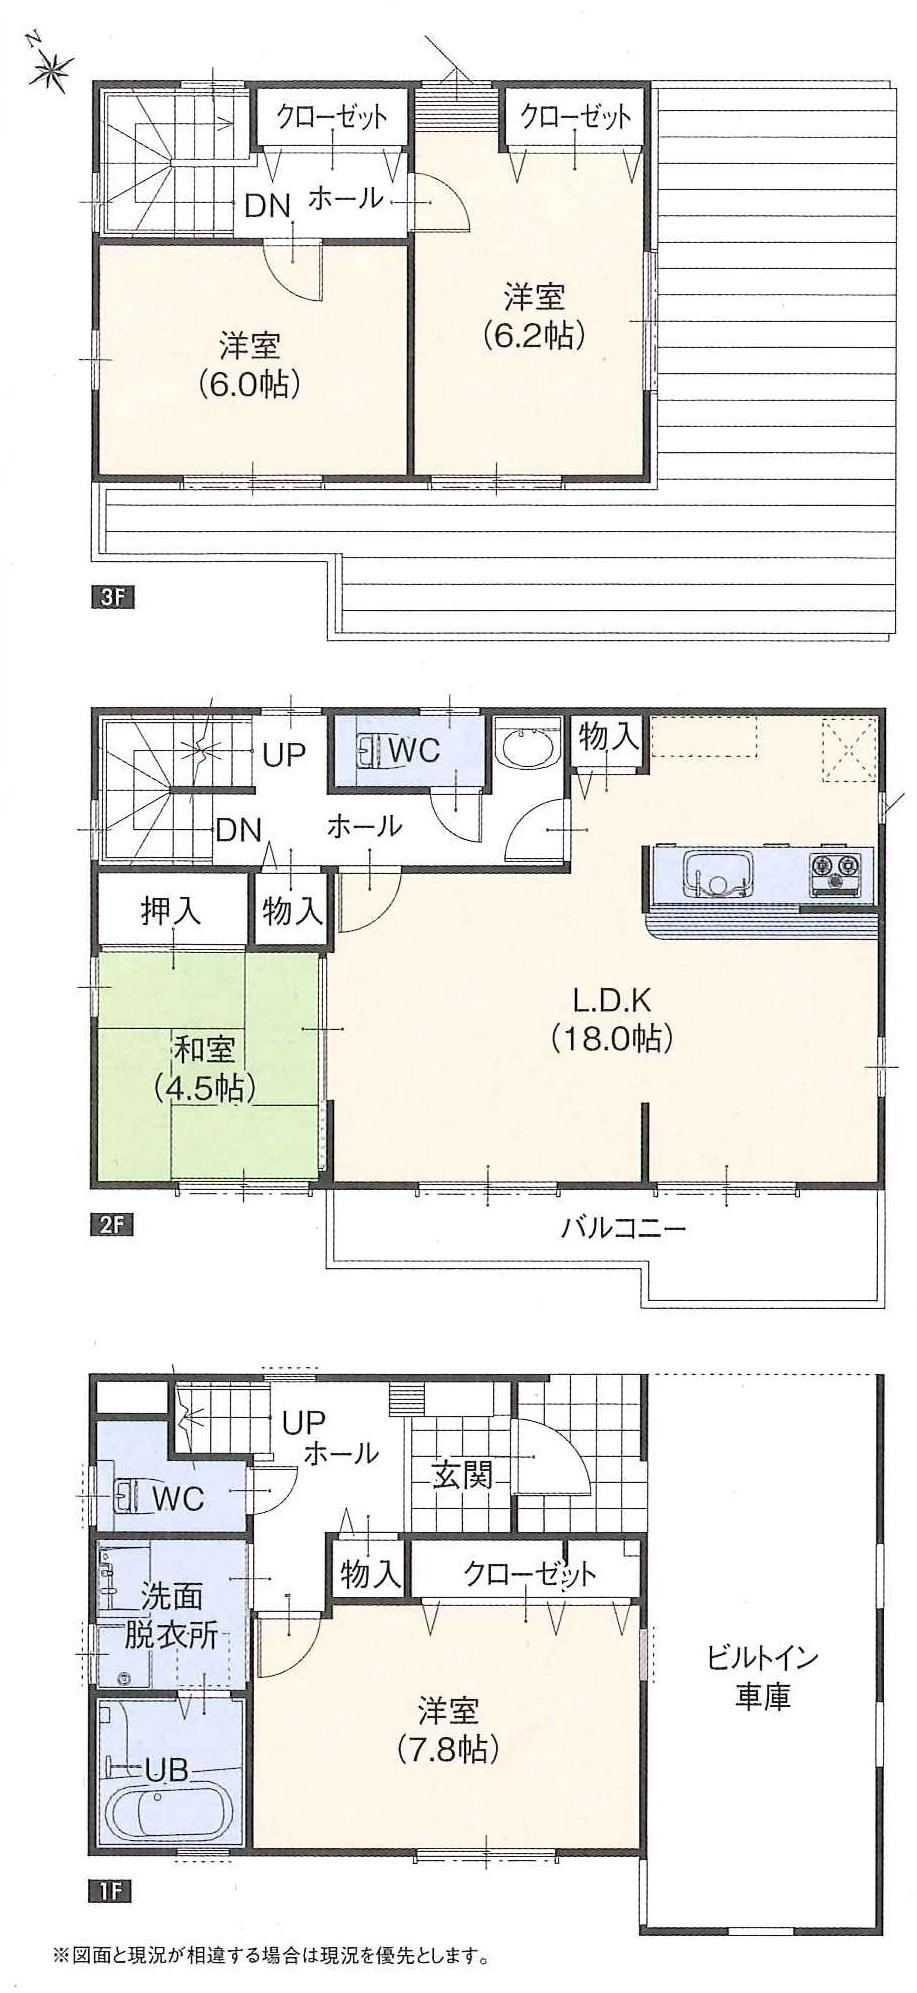 Floor plan. (A Building), Price 35,500,000 yen, 4LDK, Land area 98.11 sq m , Building area 128.12 sq m